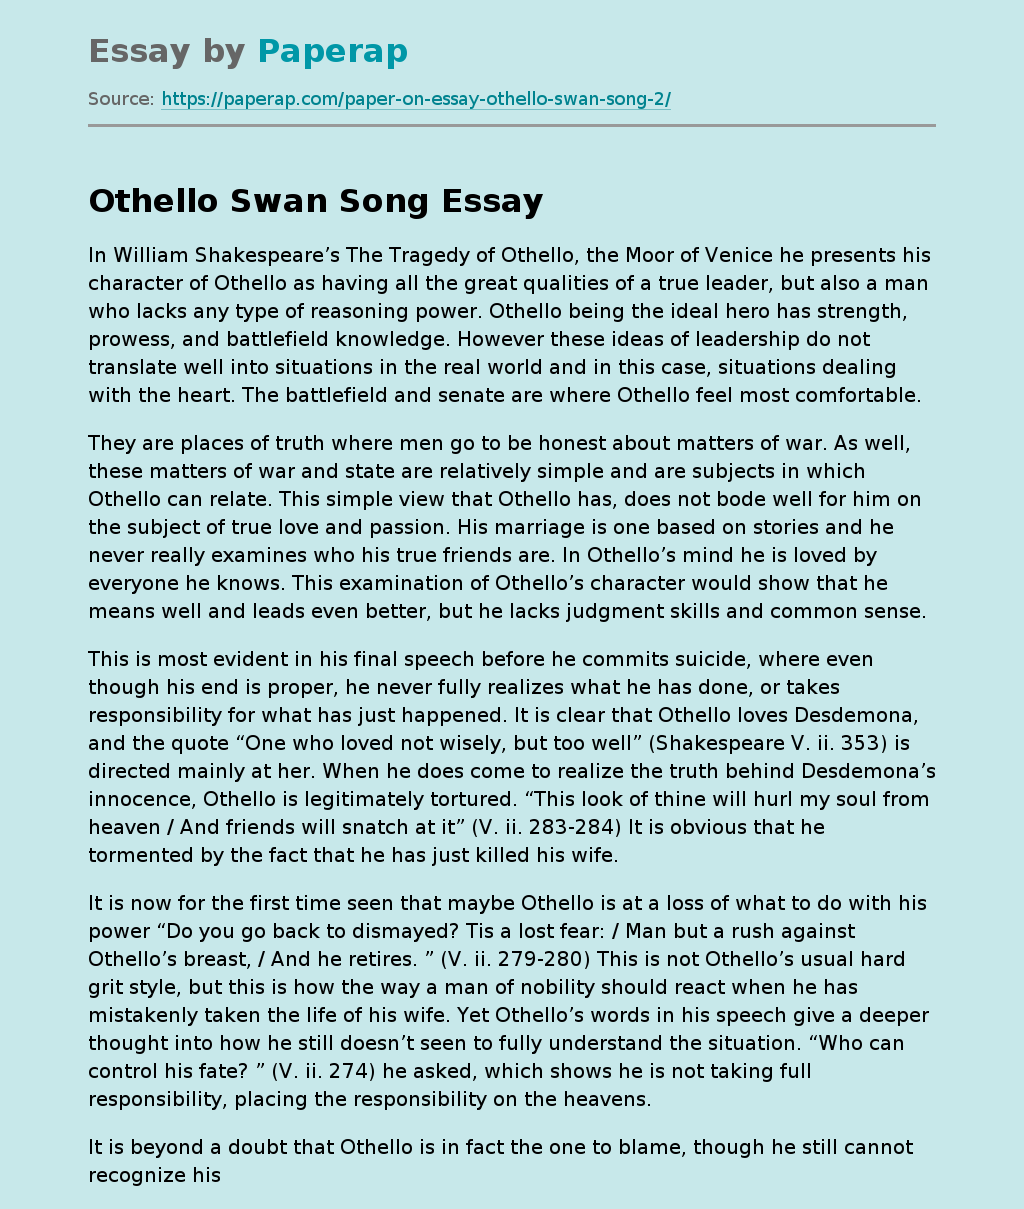 Othello Swan Song